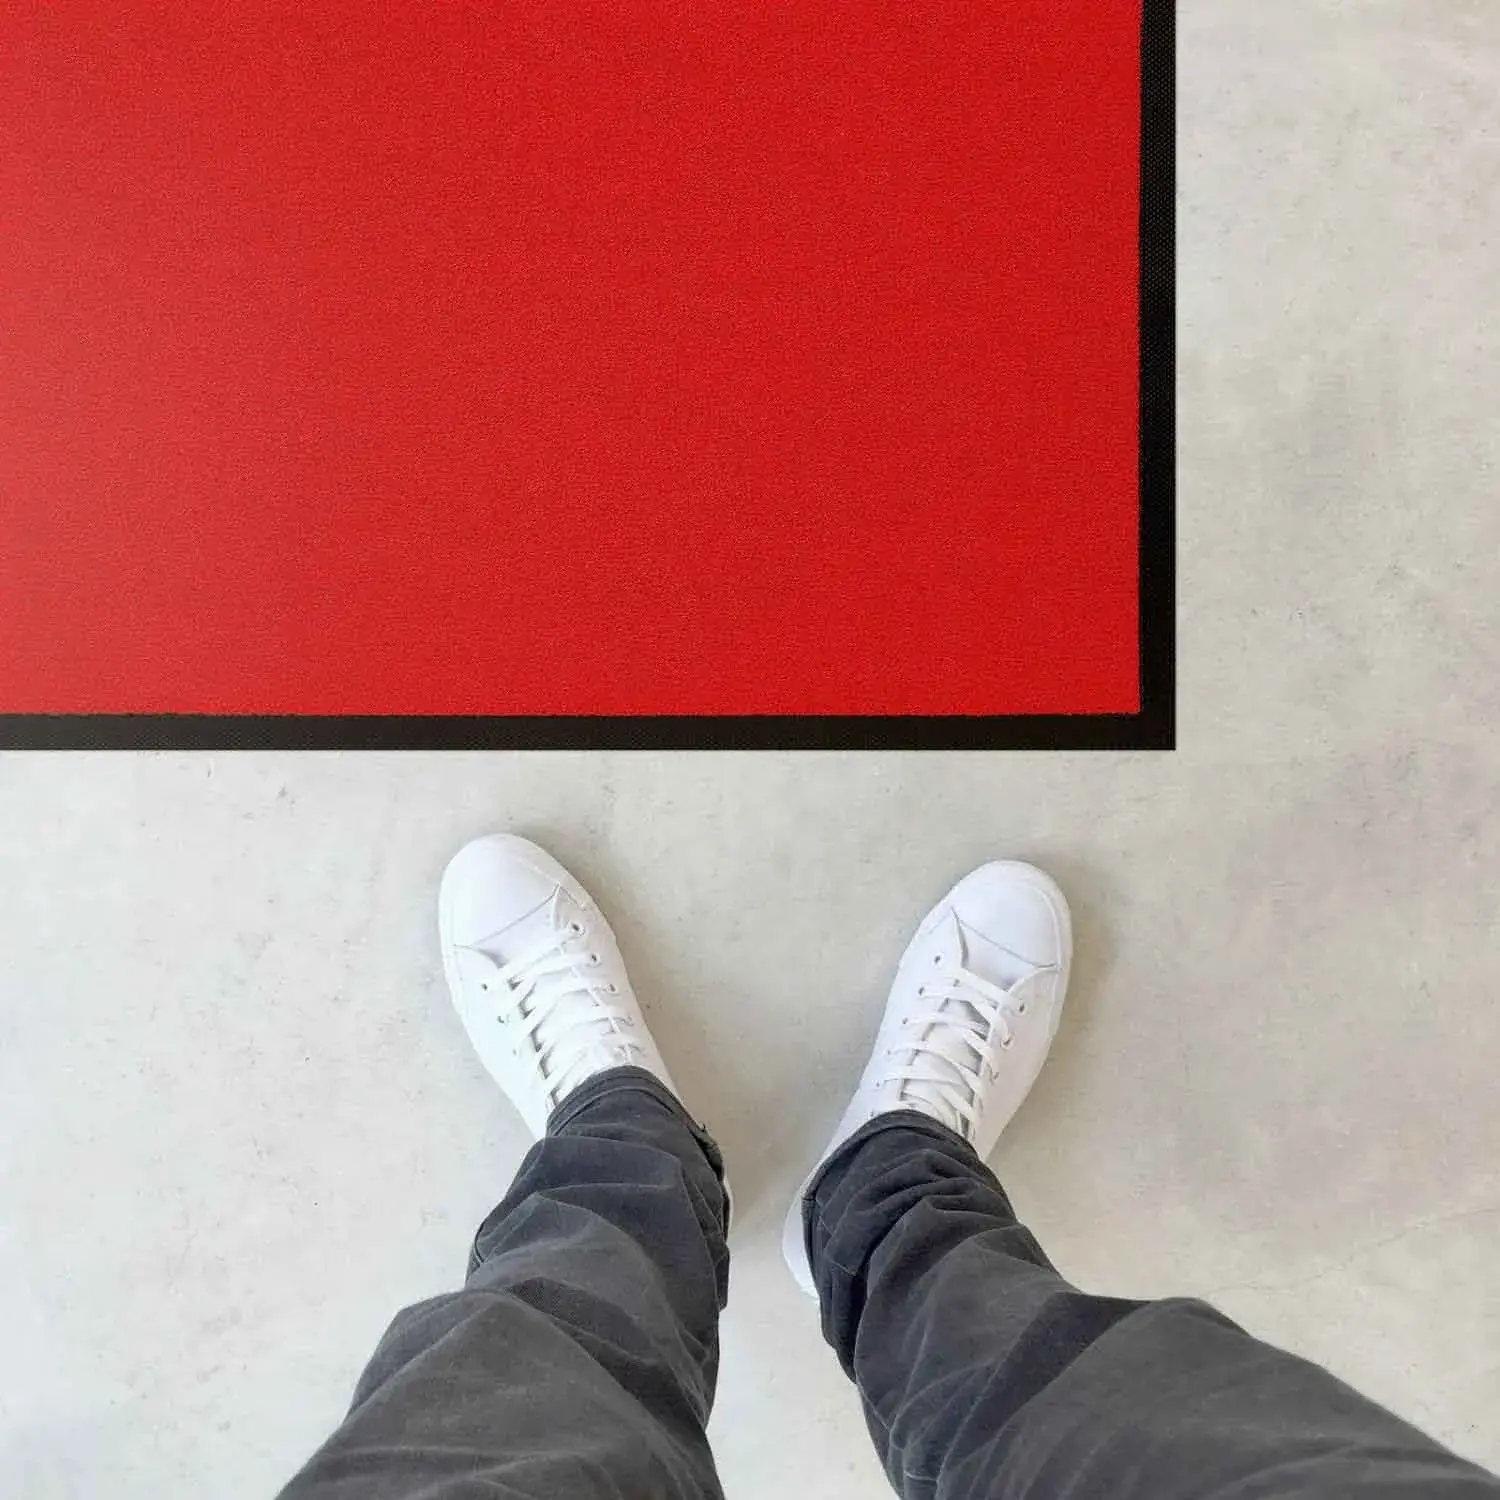 Vloerverzorging door middel van een rode mat